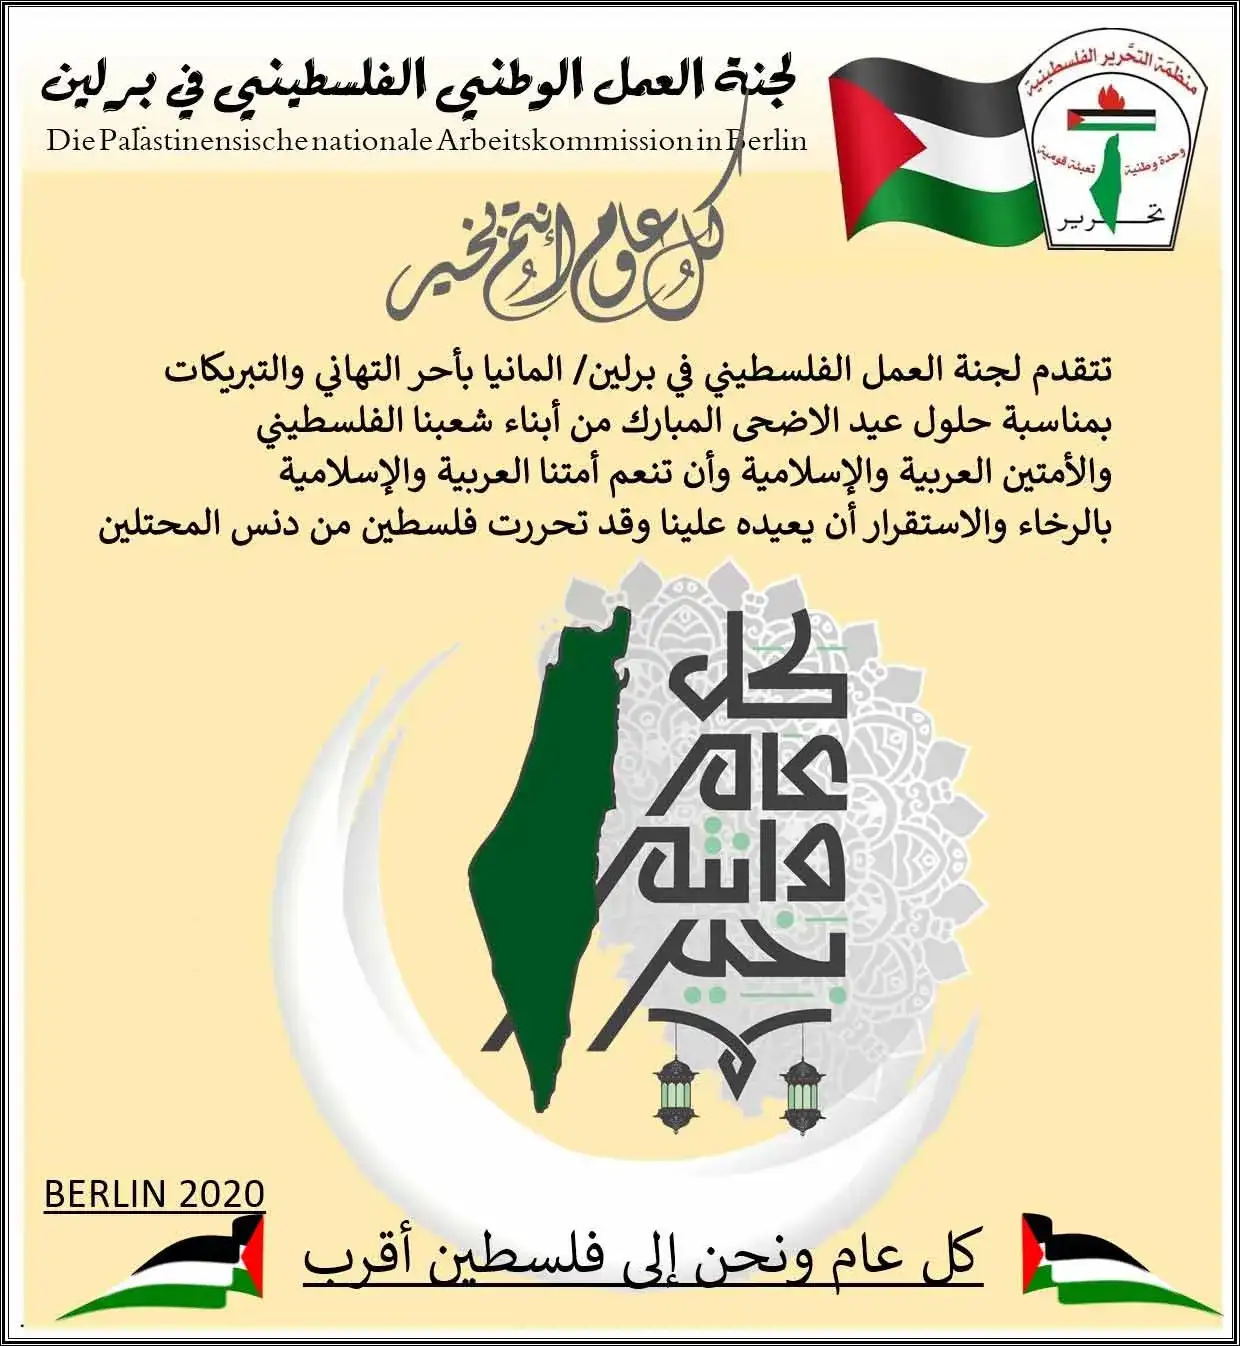 لجنة العمل الوطني الفلسطيني في برلين || تهنئة بقدوم عيد الأضحى المبارك